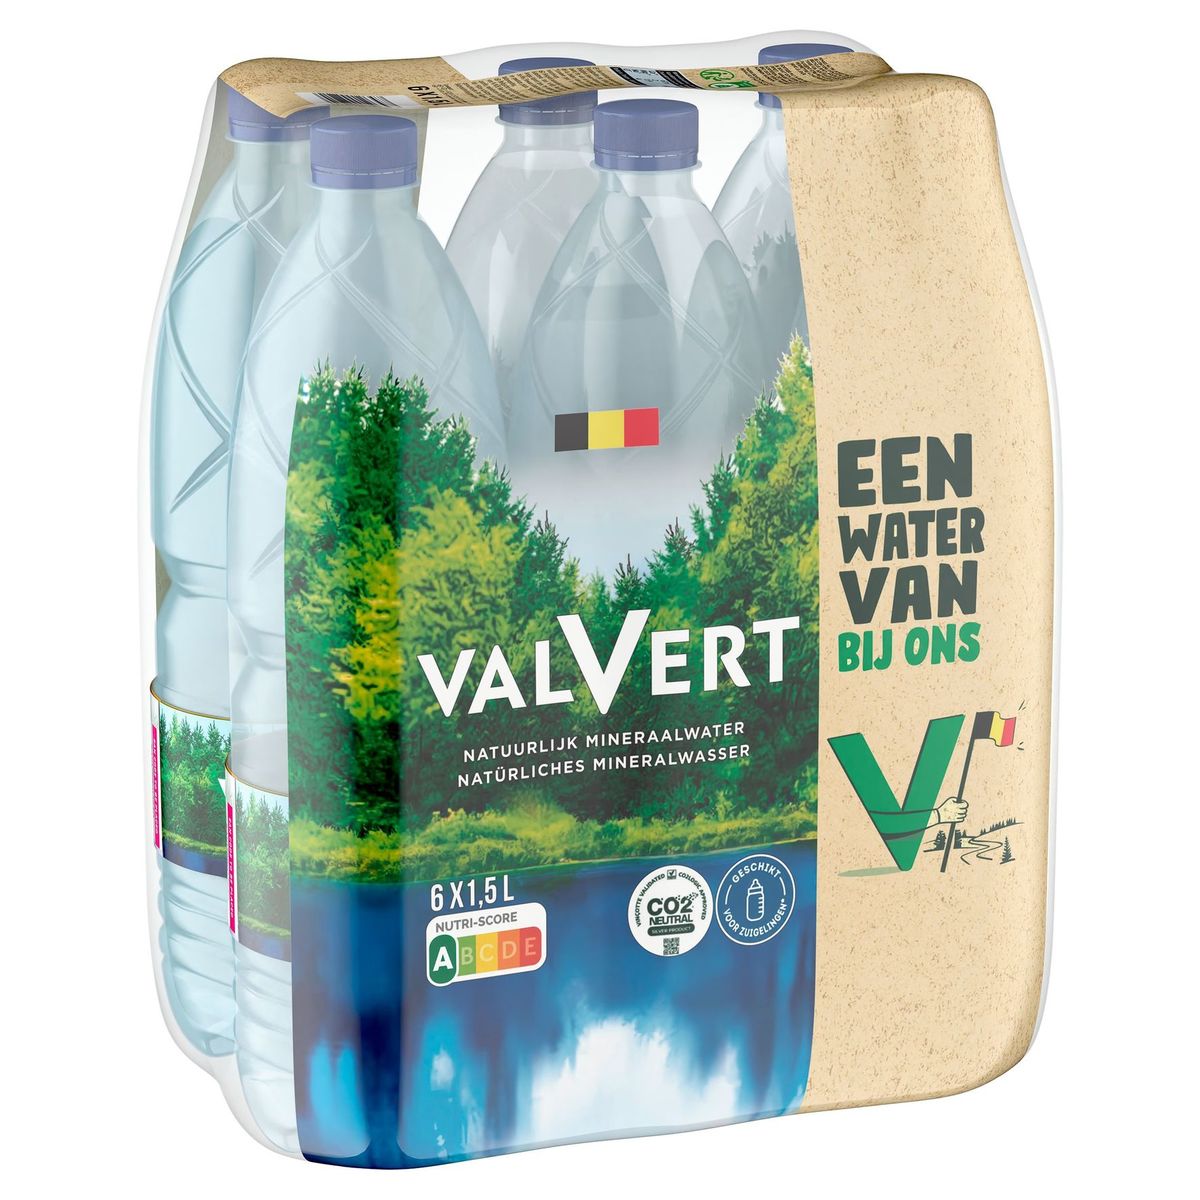 VALVERT Belgisch Natuurlijk Mineraalwater 1.5L PET Fles (Pack van 6 Flessen)